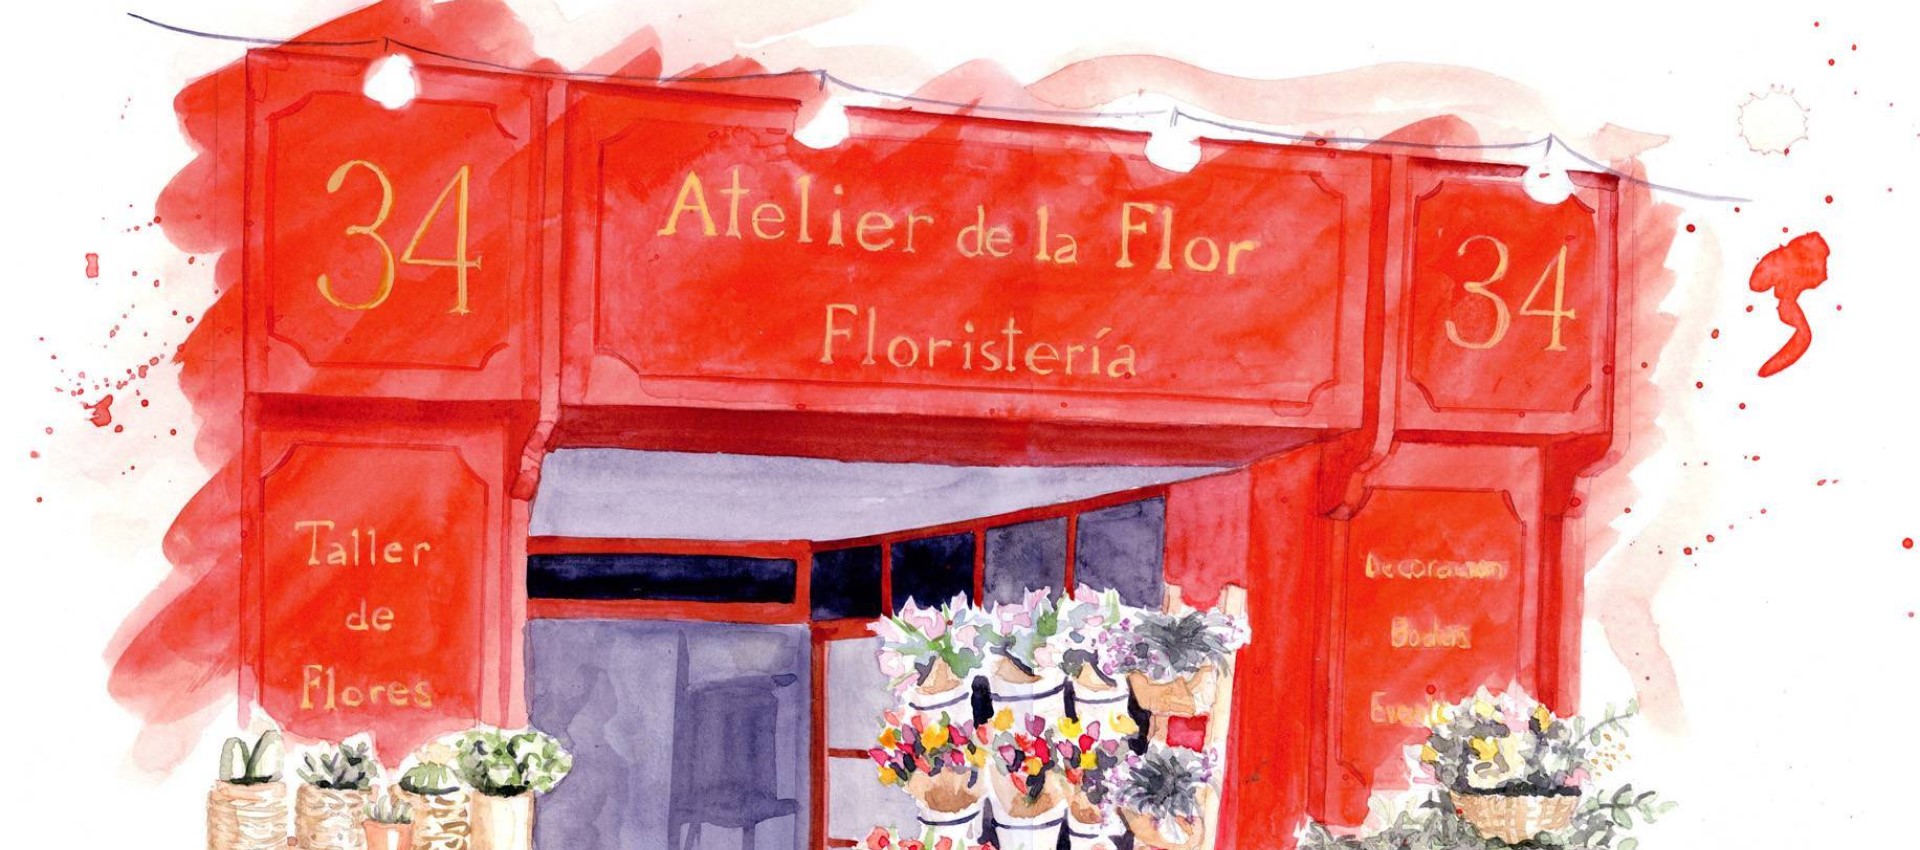 Atelier de la Flor, espace de vente de fleurs, ateliers et décoration pour des évènements de grands succès à Valencia